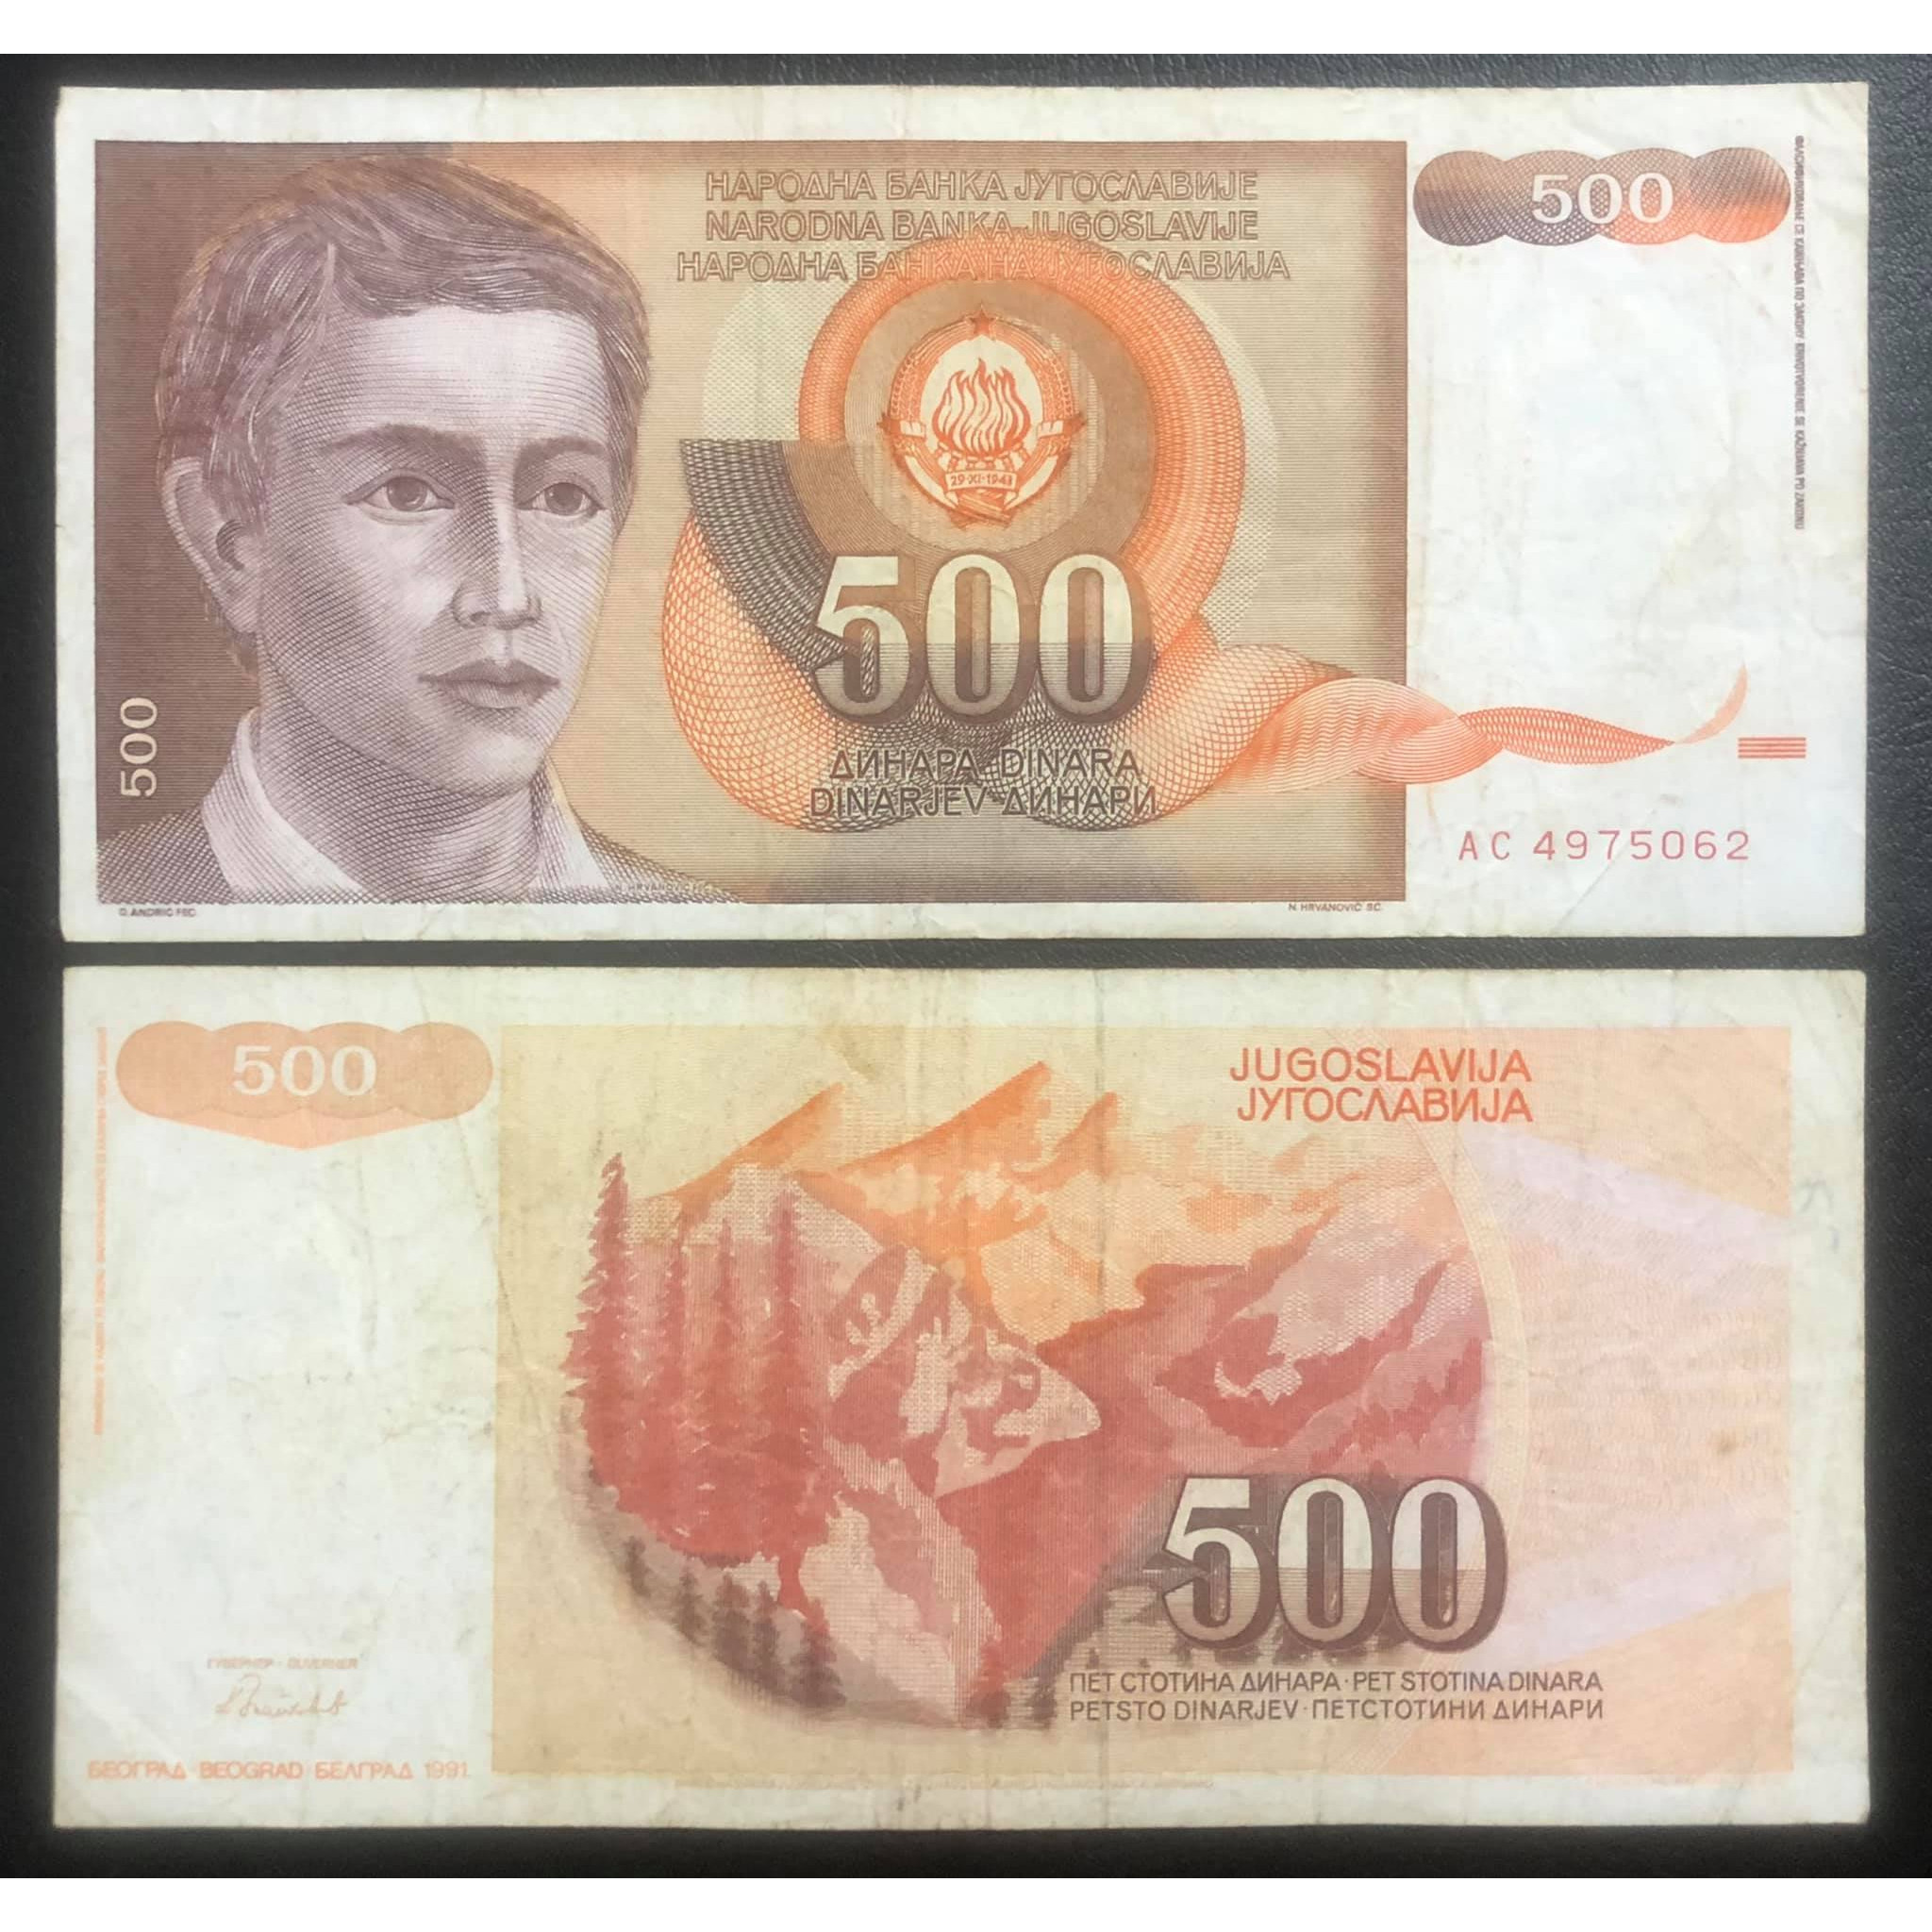 Tiền châu Âu 500 dinara của Nam Tư cũ